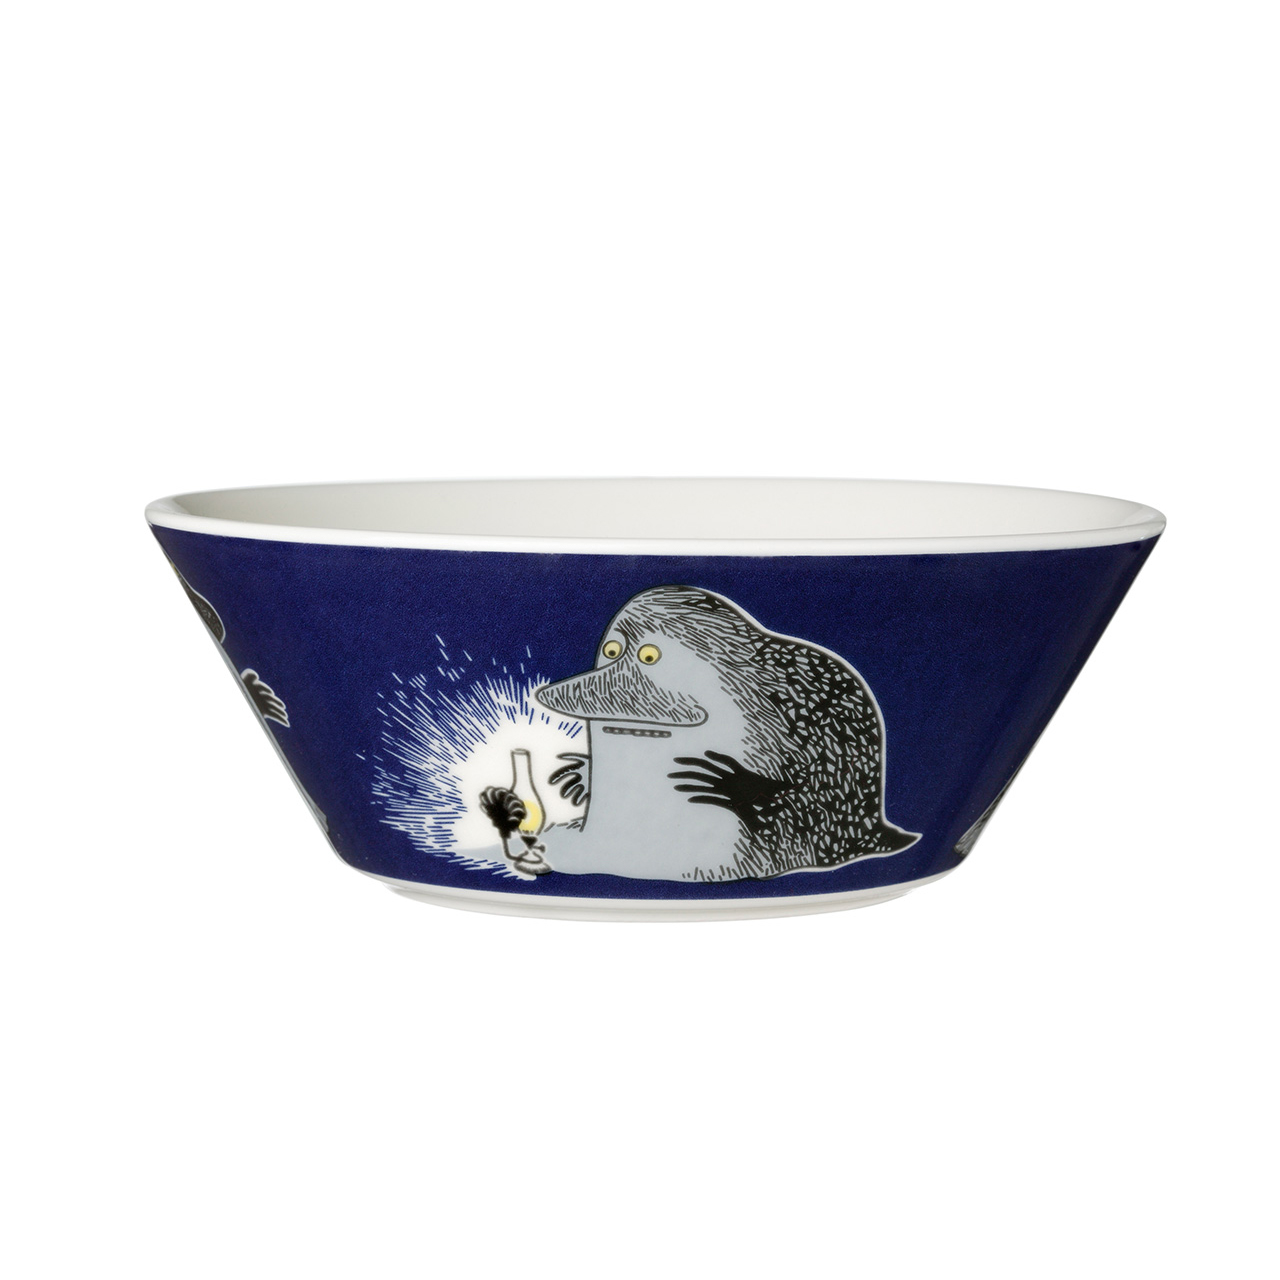 1005578_Moomin bowl 15cm The Groke_2.jpg